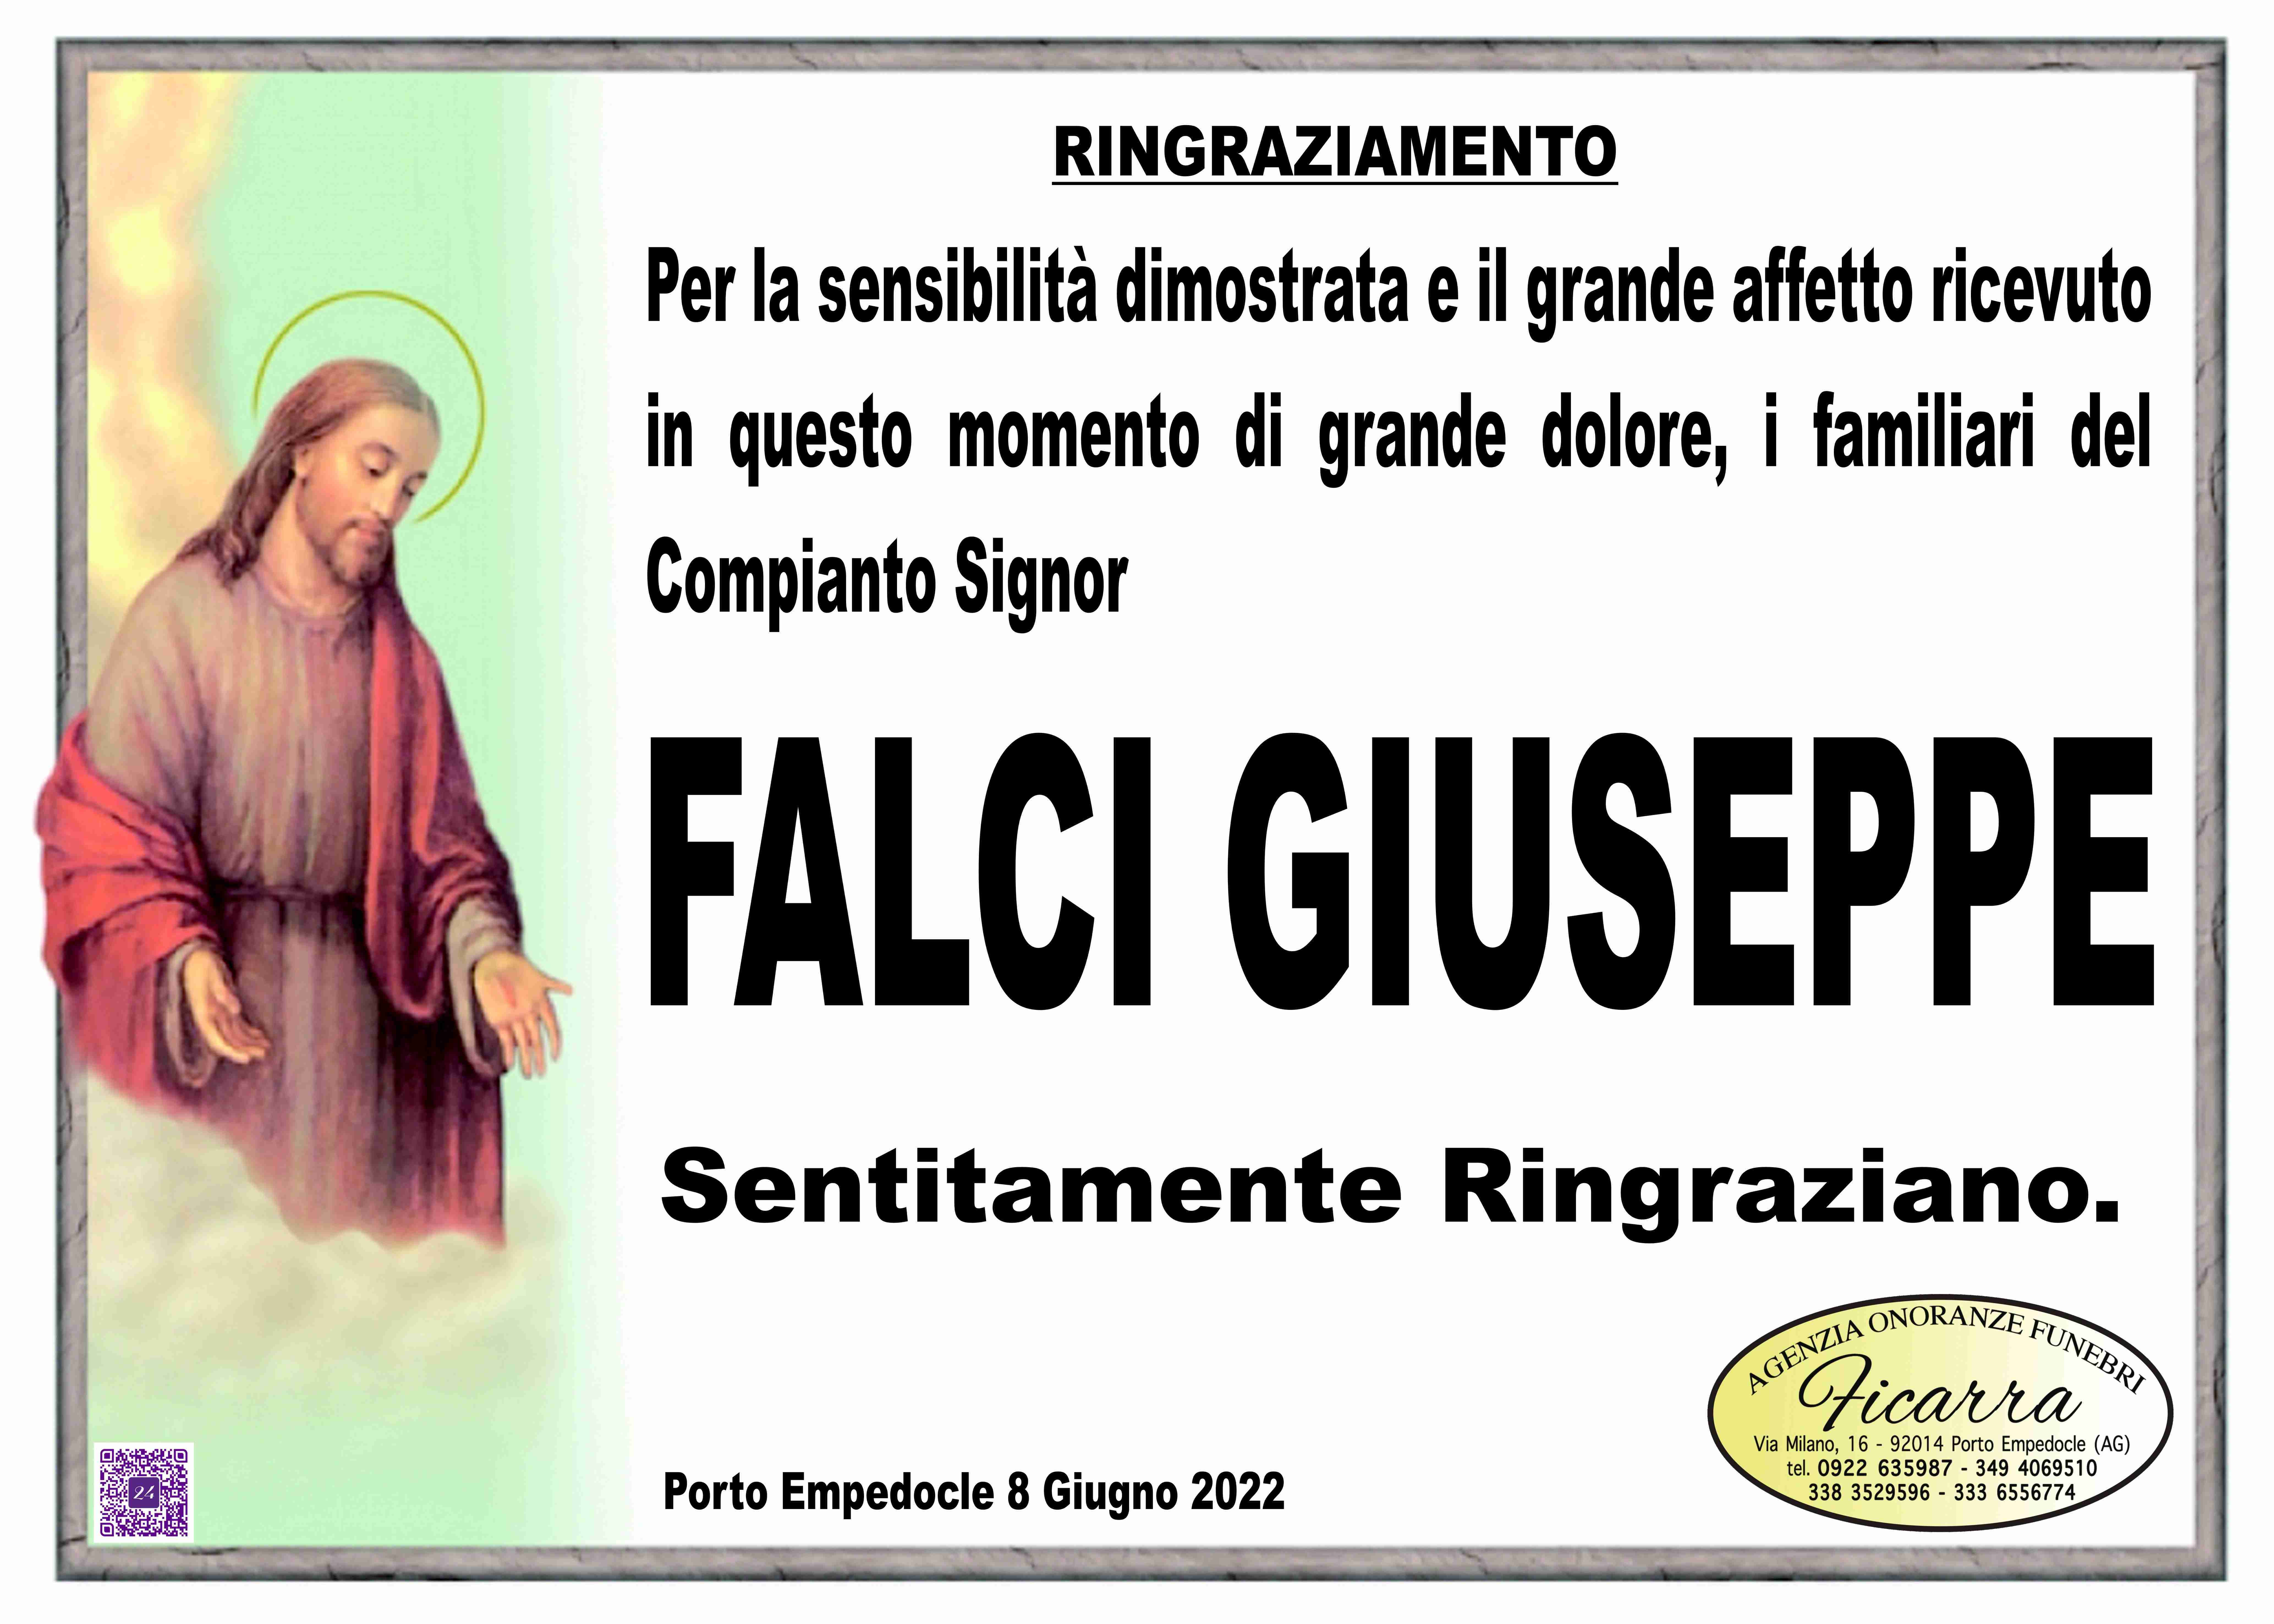 Giuseppe Falci